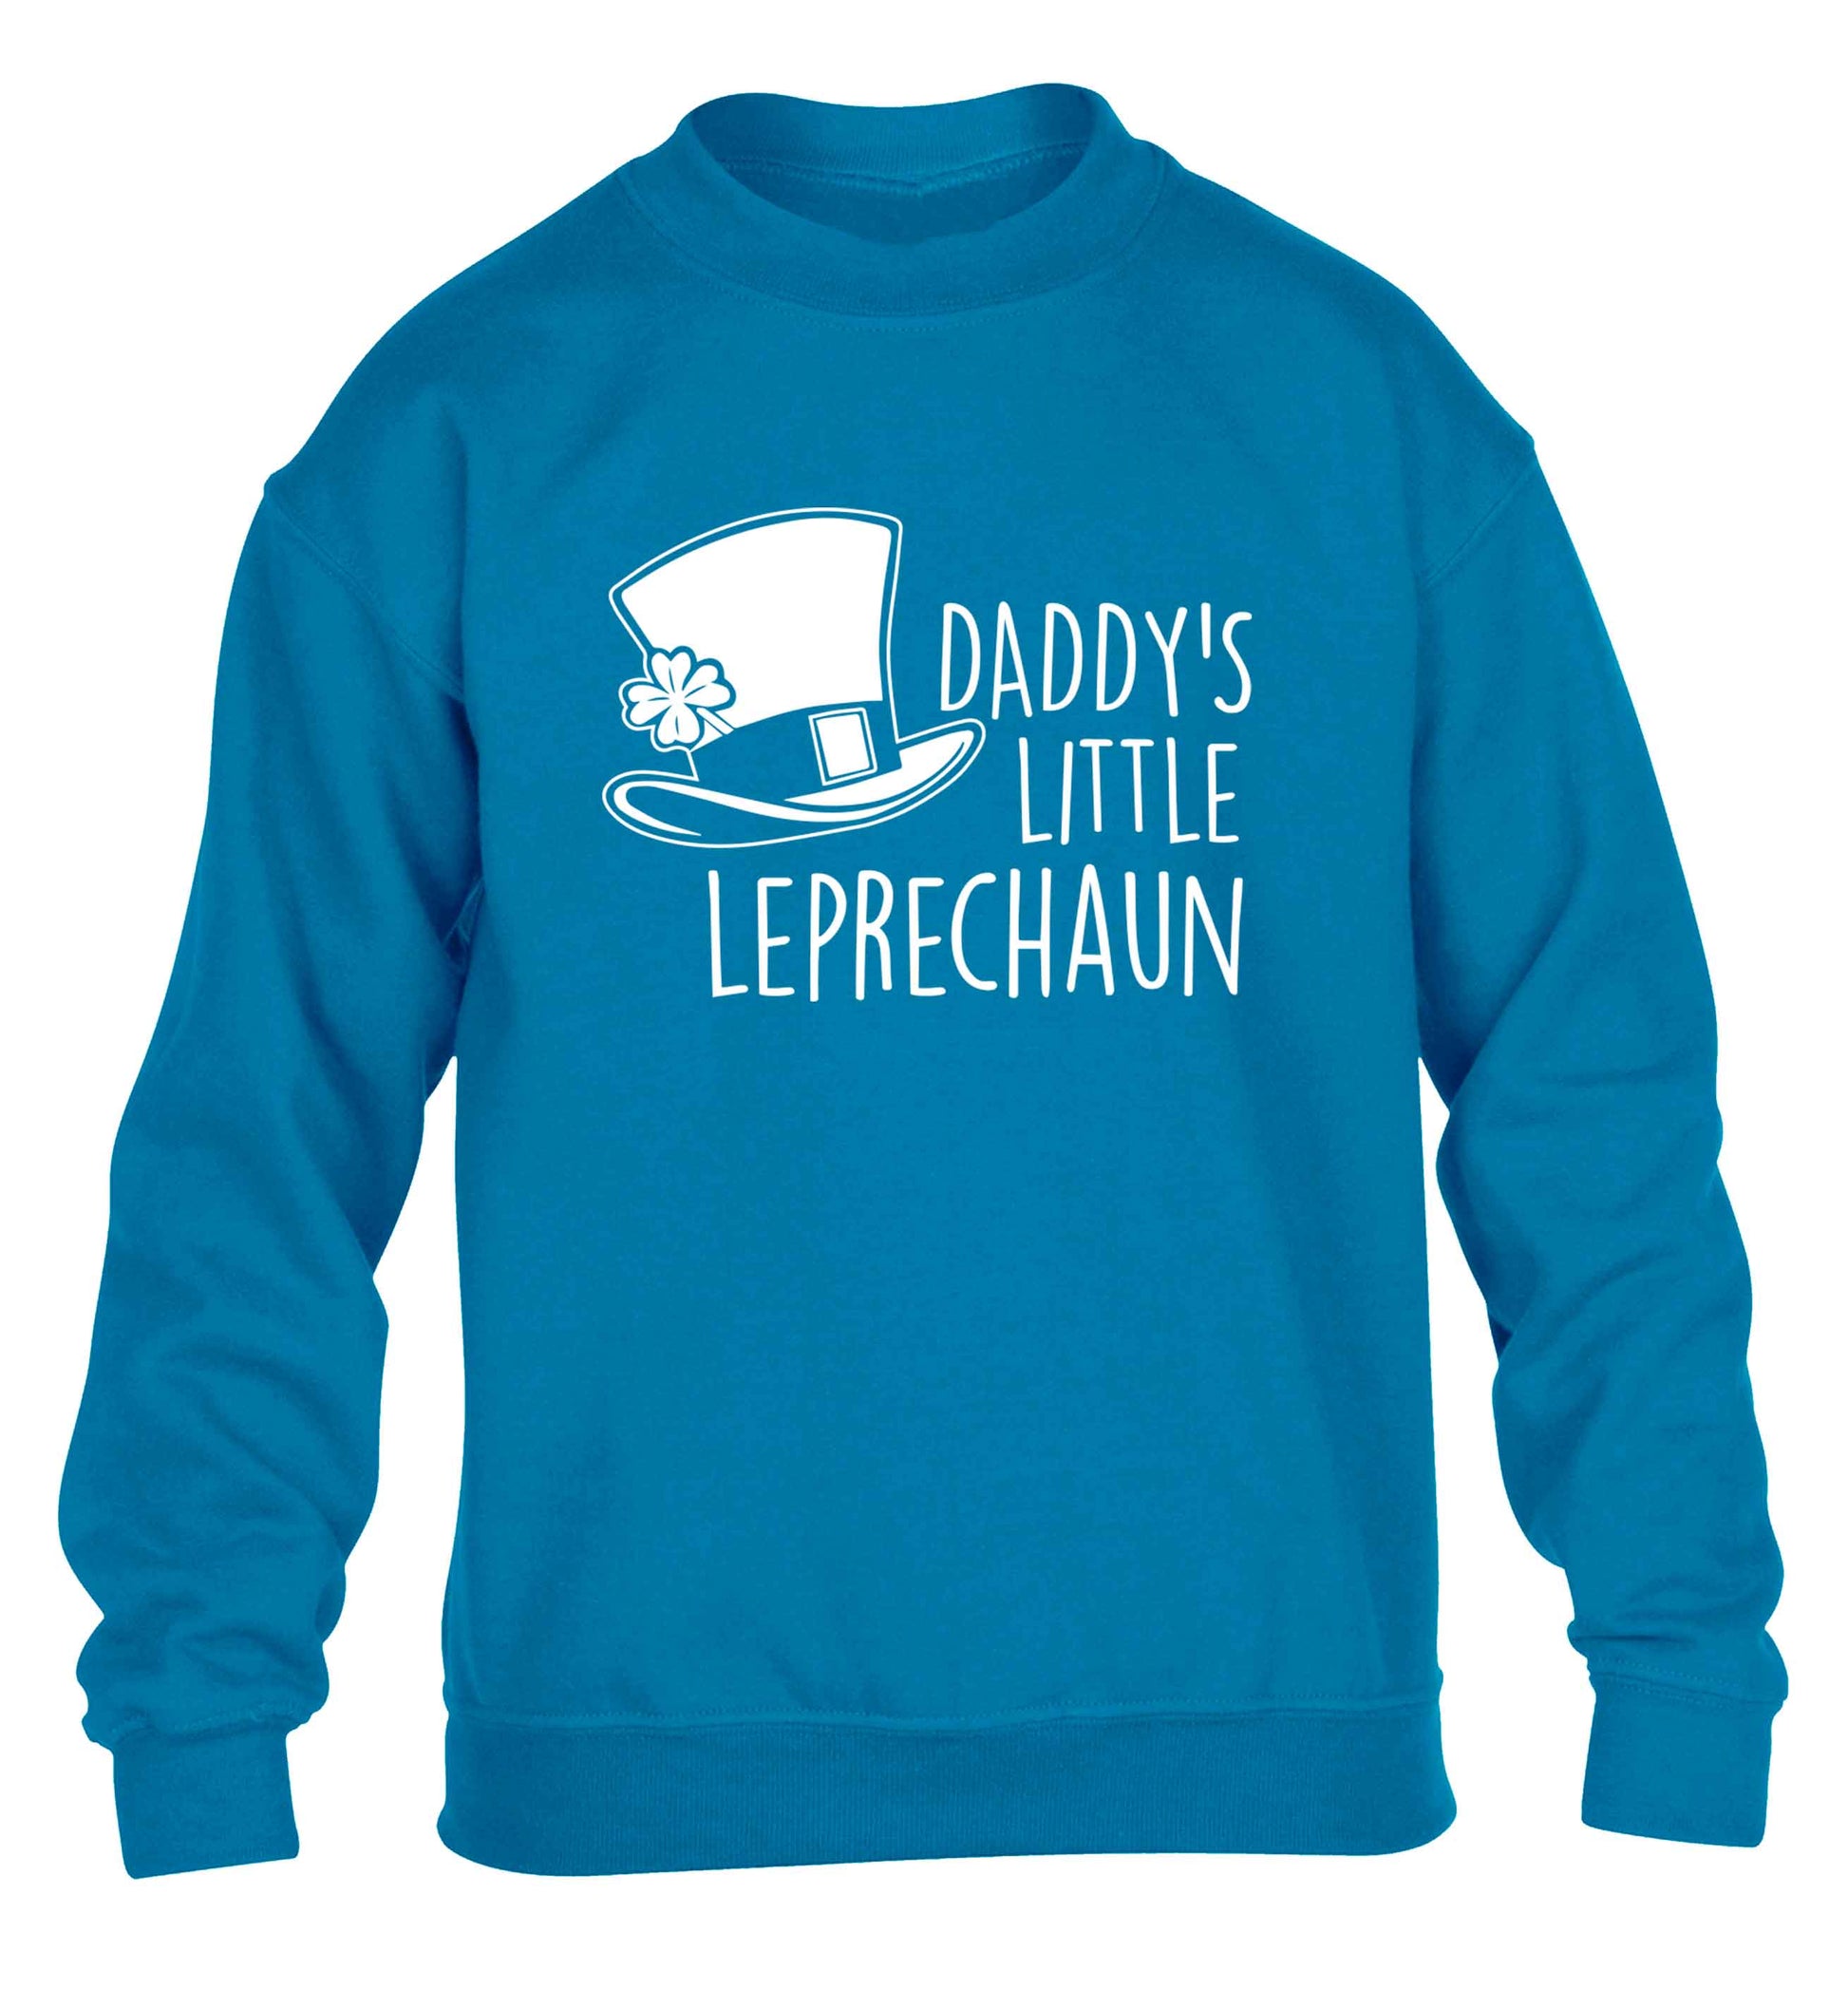 Daddy's little leprechaun children's blue sweater 12-13 Years